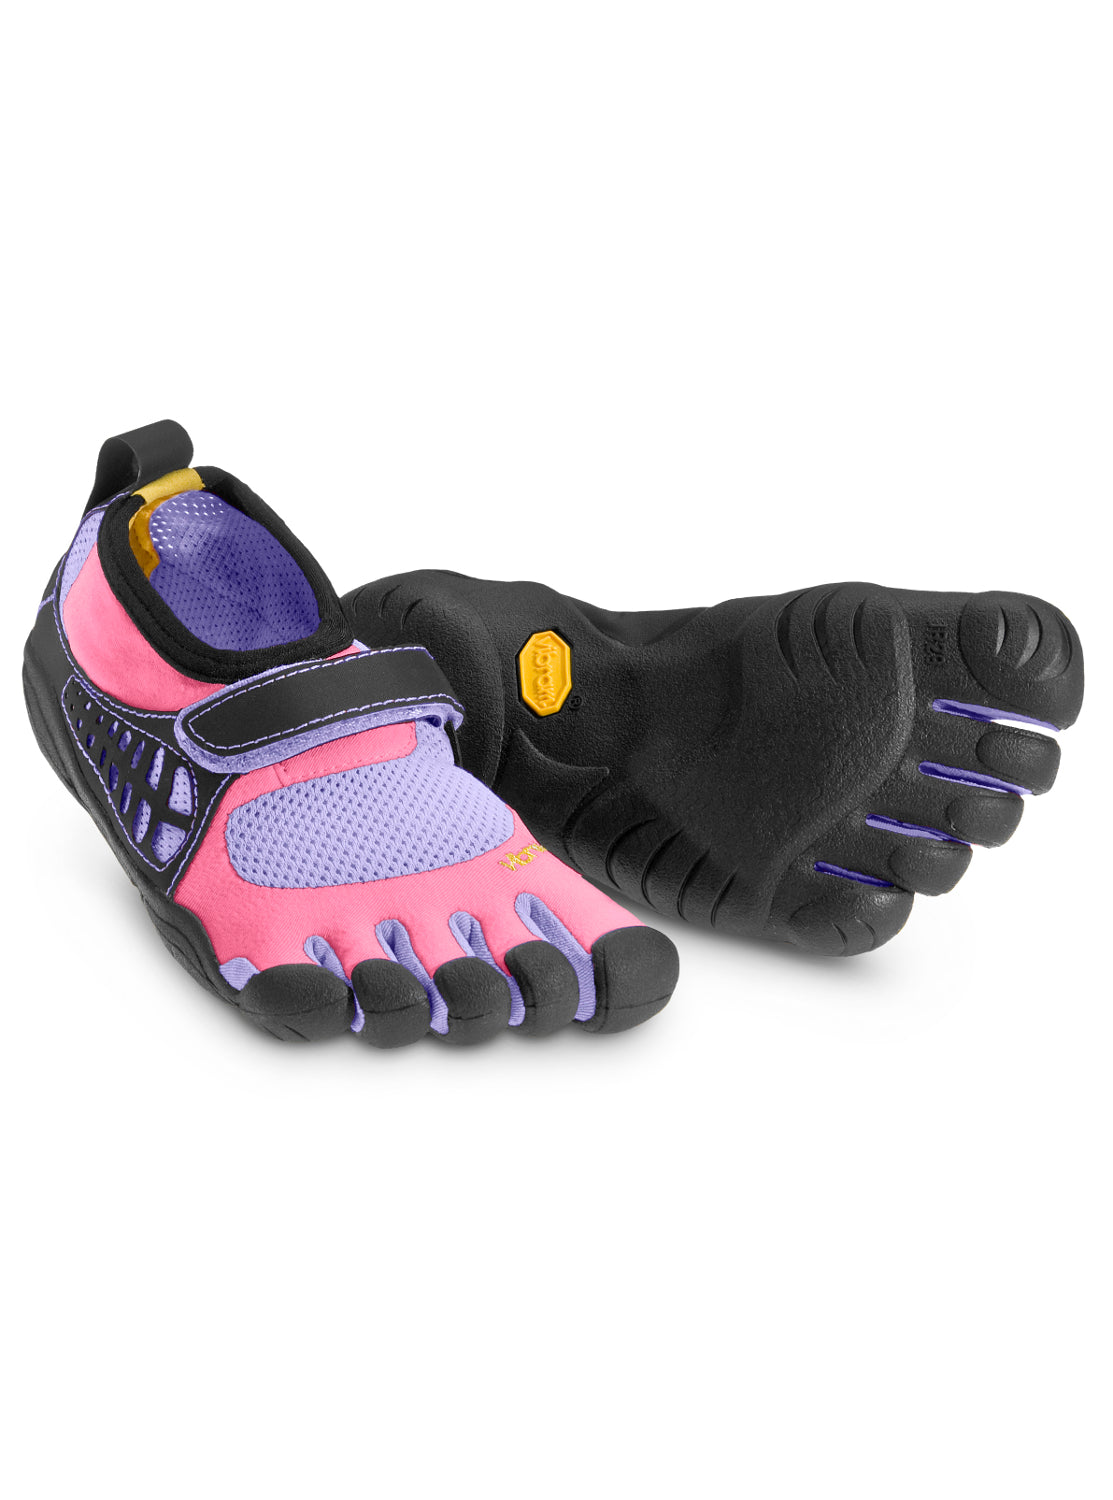 Vibram Fivefingers Beş Parmaklı Ortopedik Kız Çocuk ayakkabısı